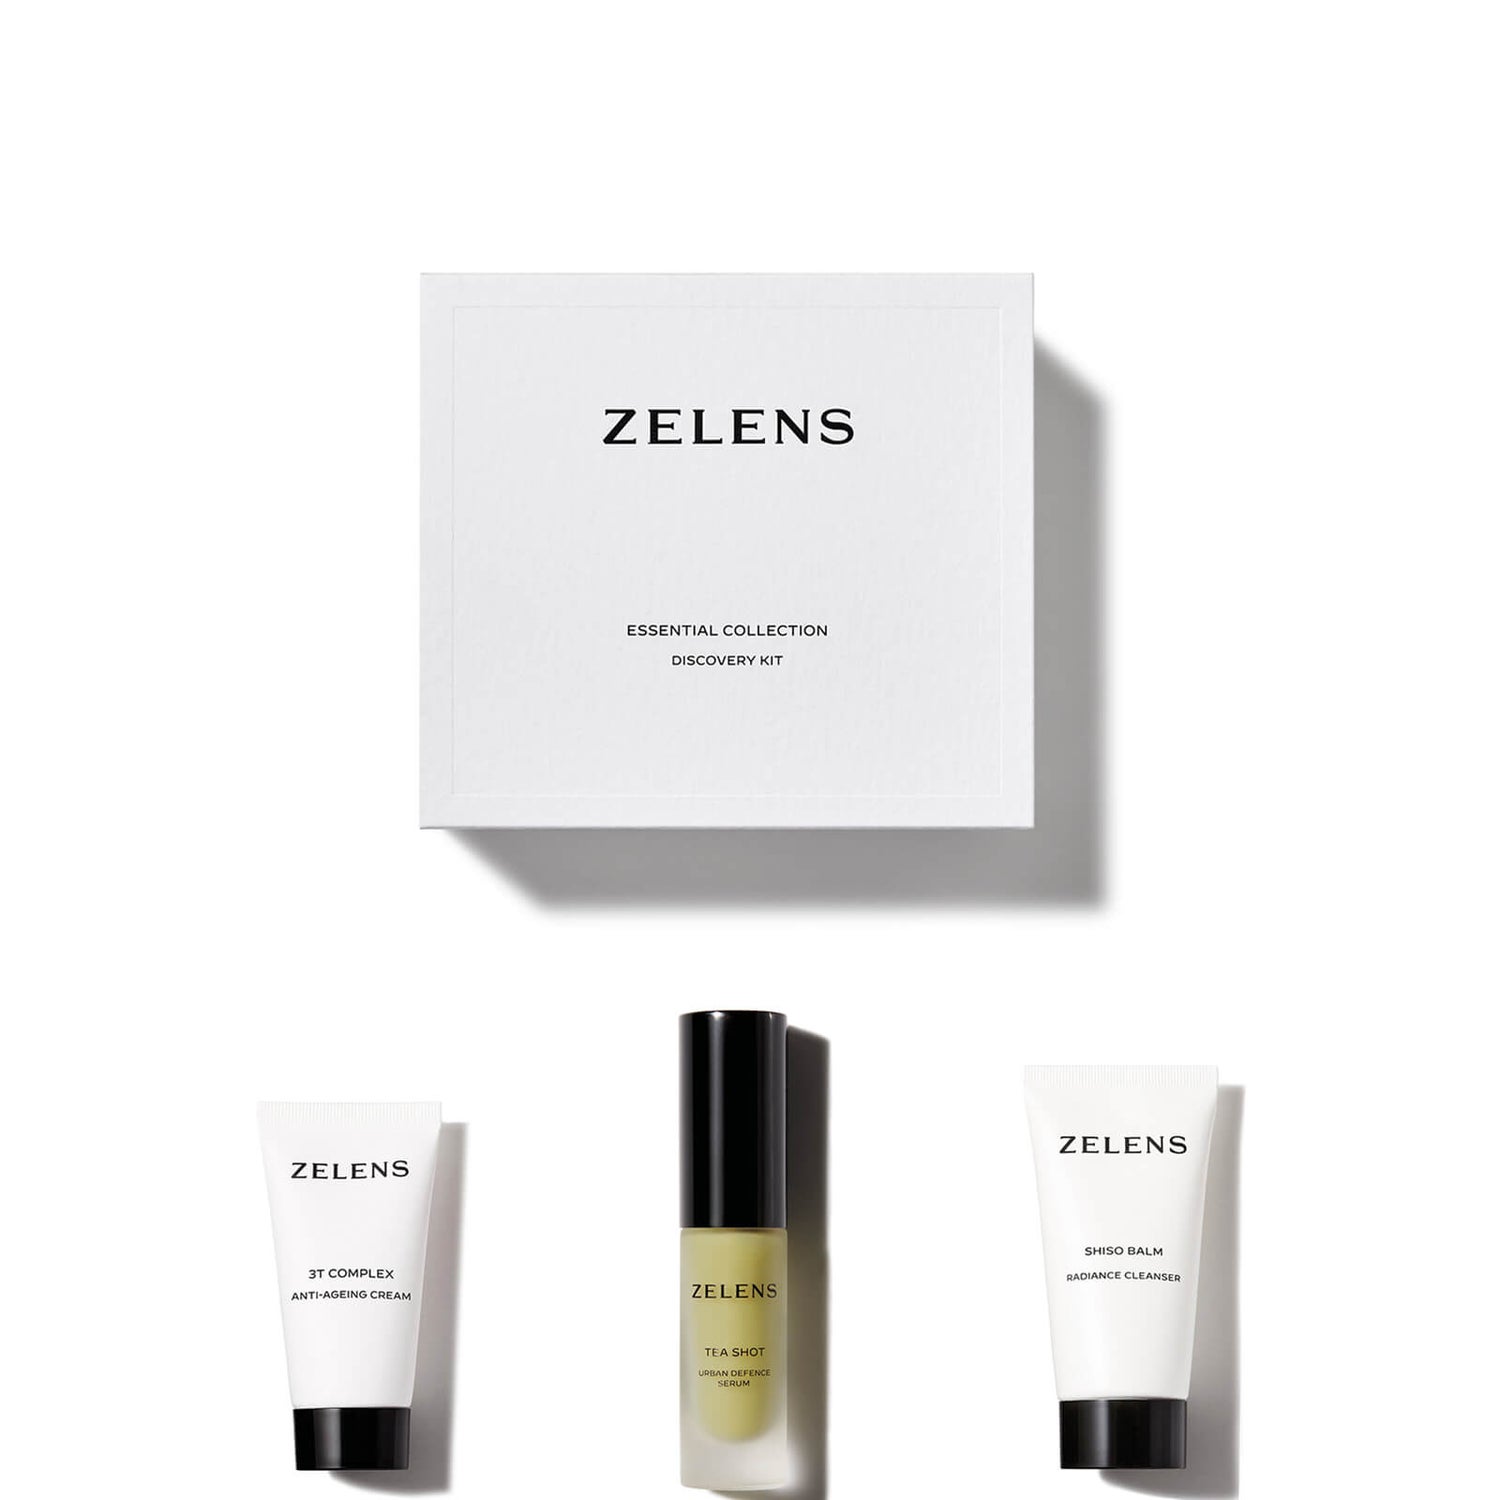 Zelens Essentials Collection